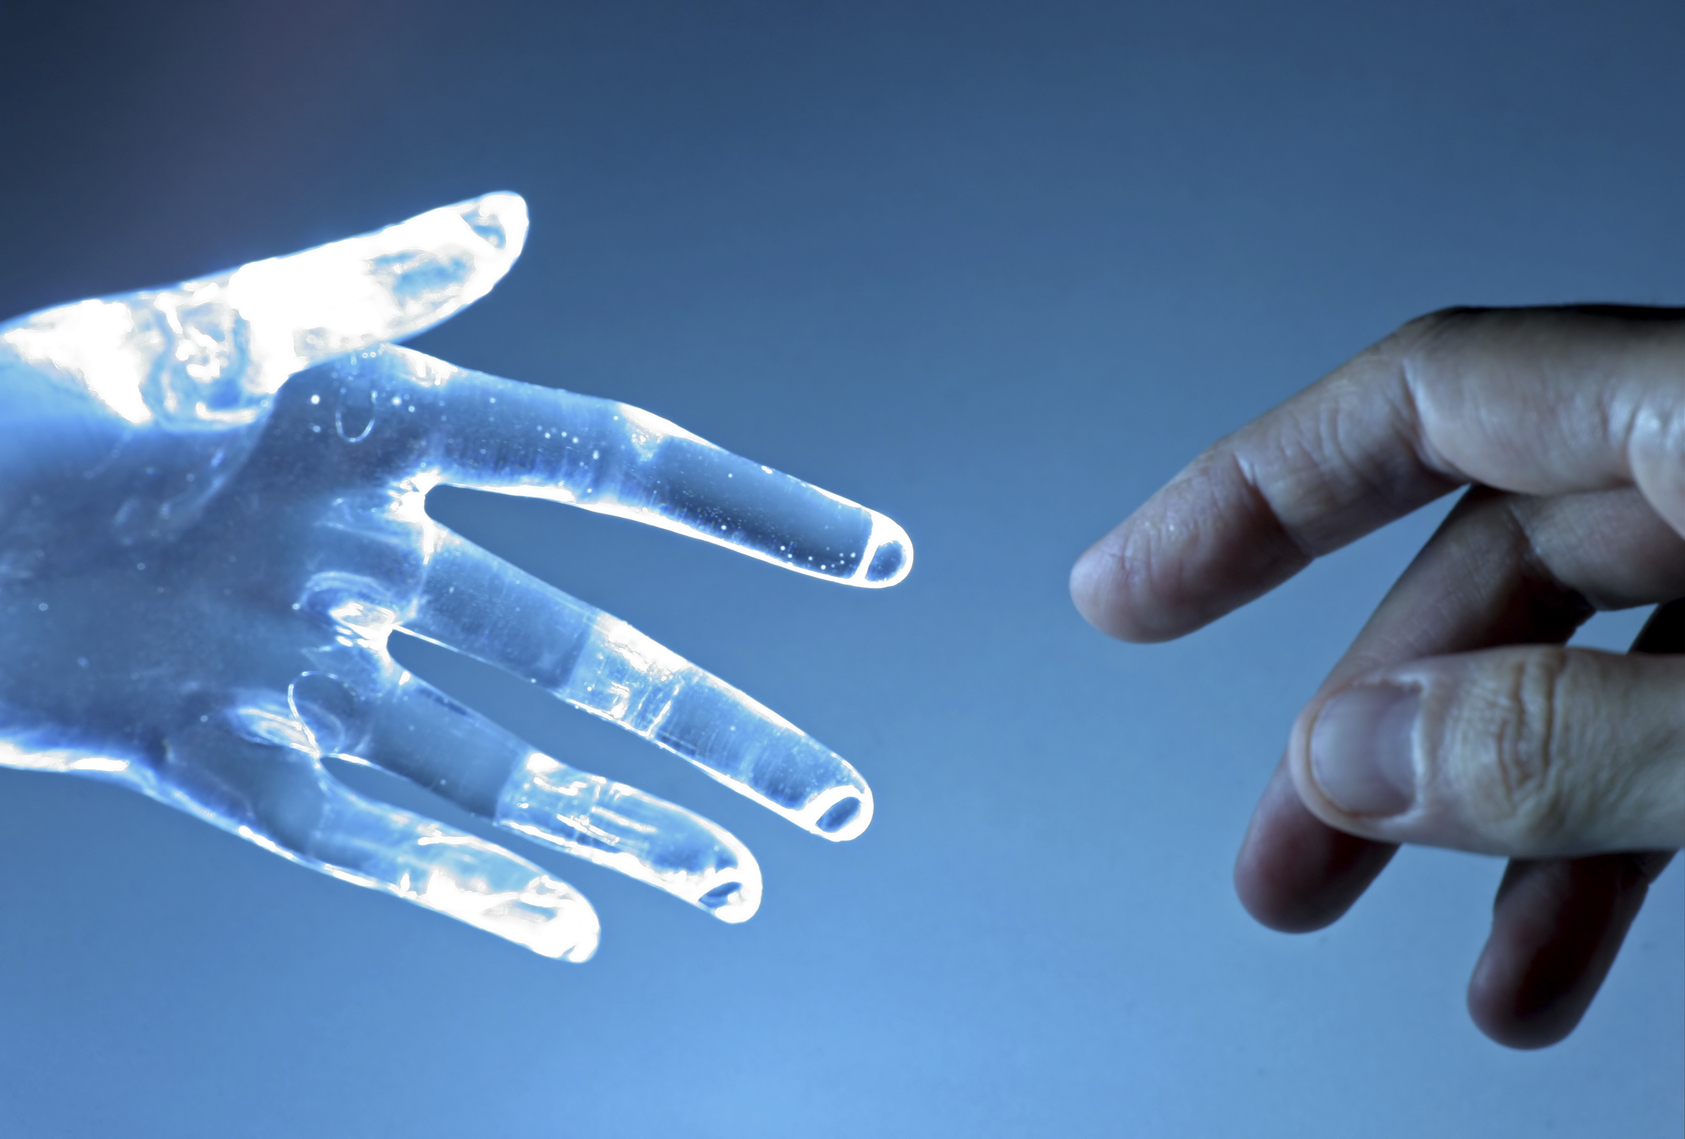 Human hand touch an atrifical glass hand